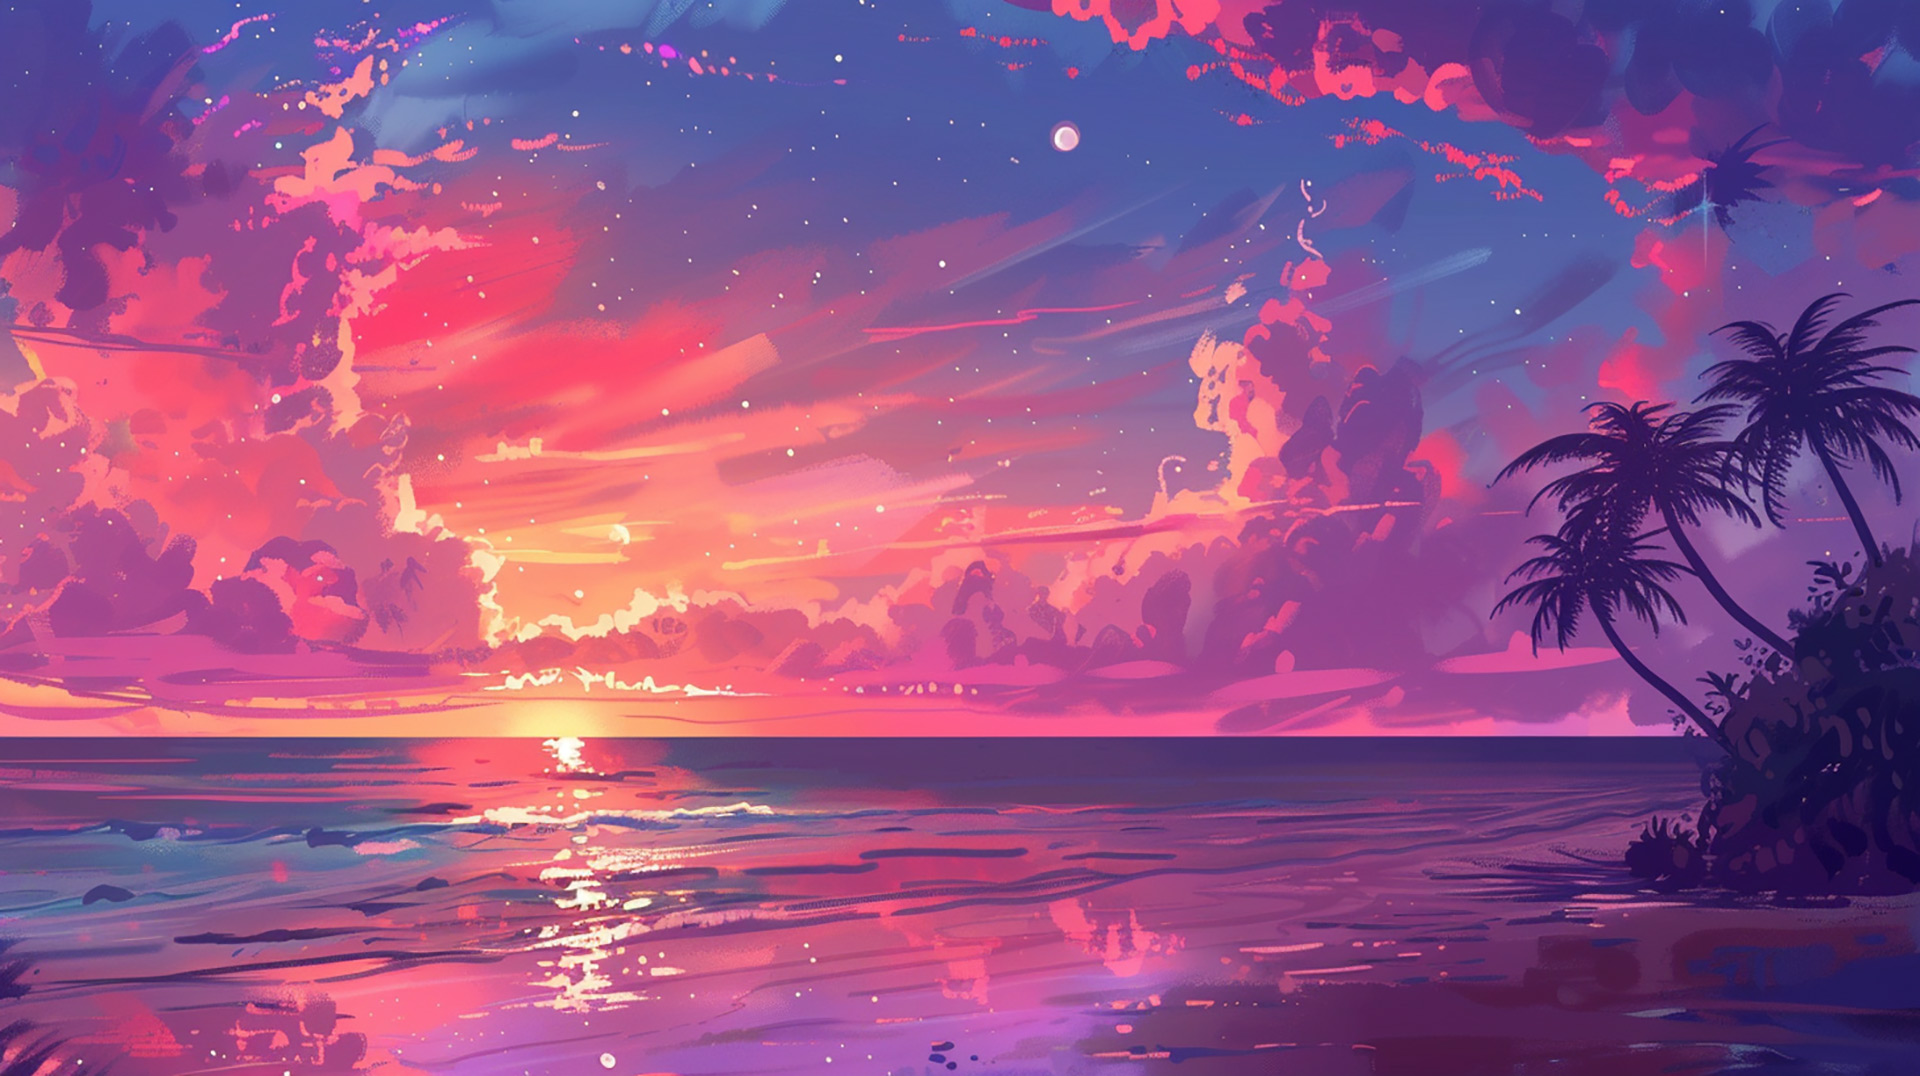 Twilight Paradise: Tropical Beach Sunset Beauty